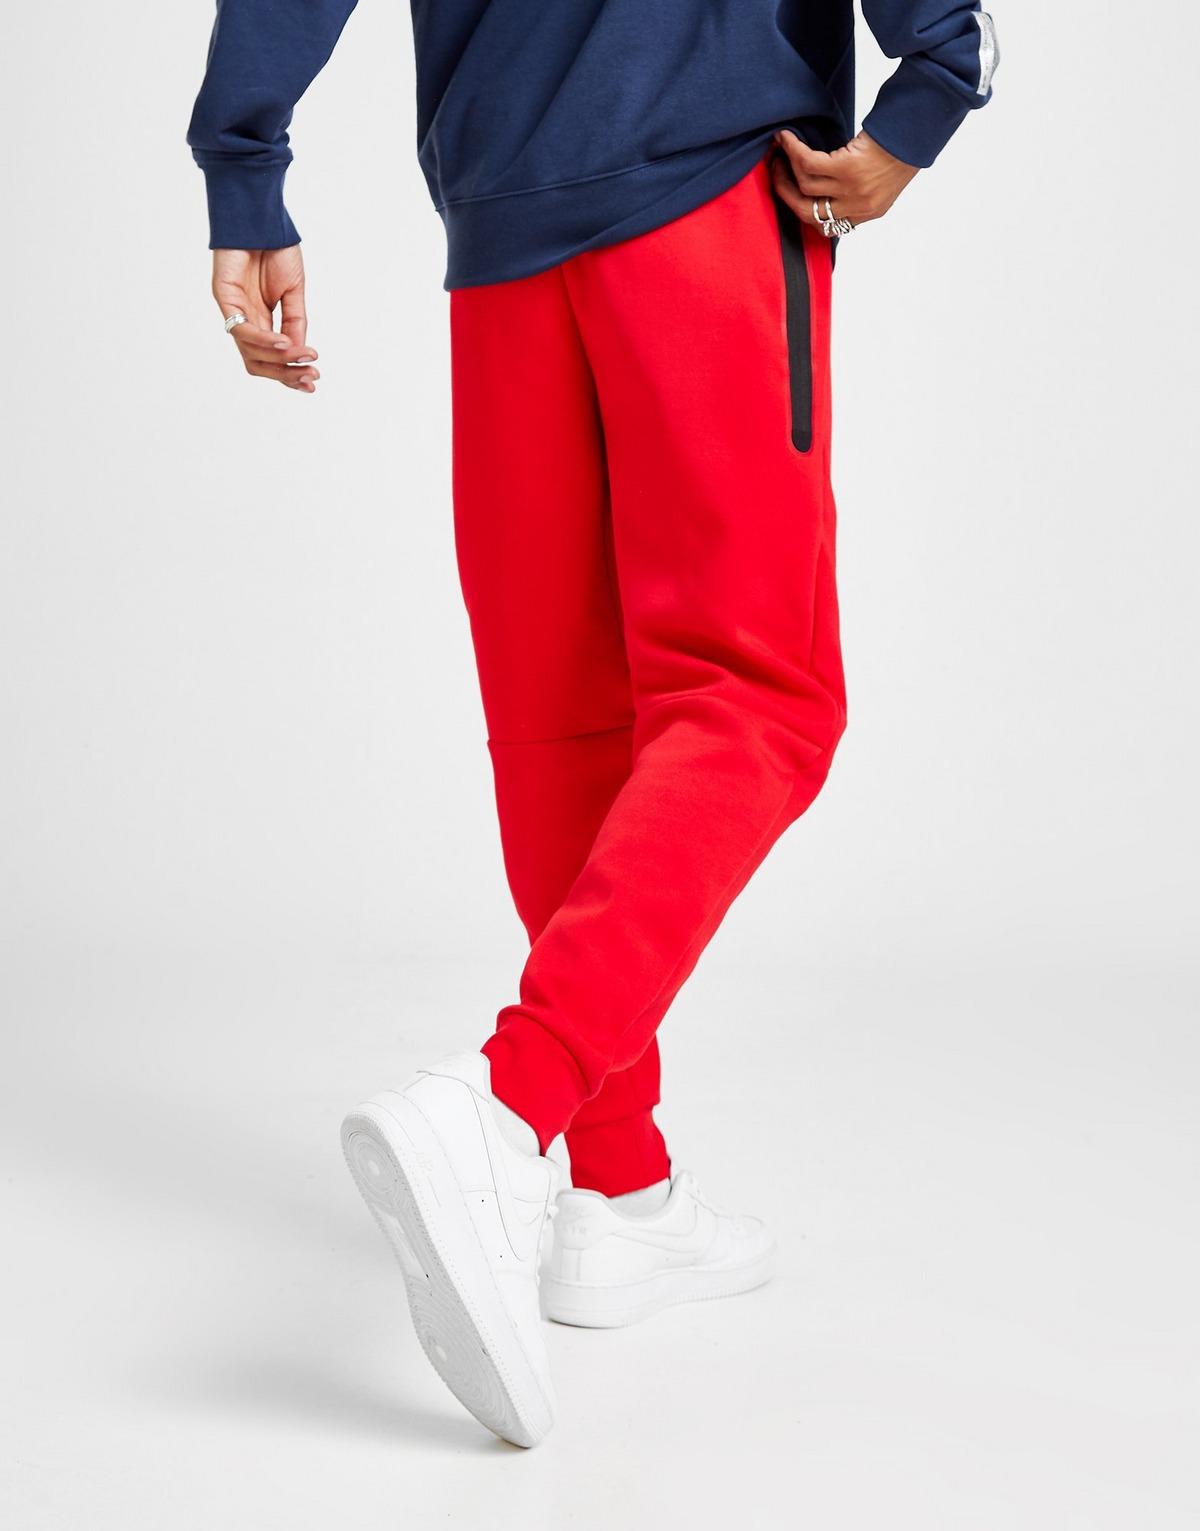 Nike Tech Fleece Joggers in Red for Men - Lyst